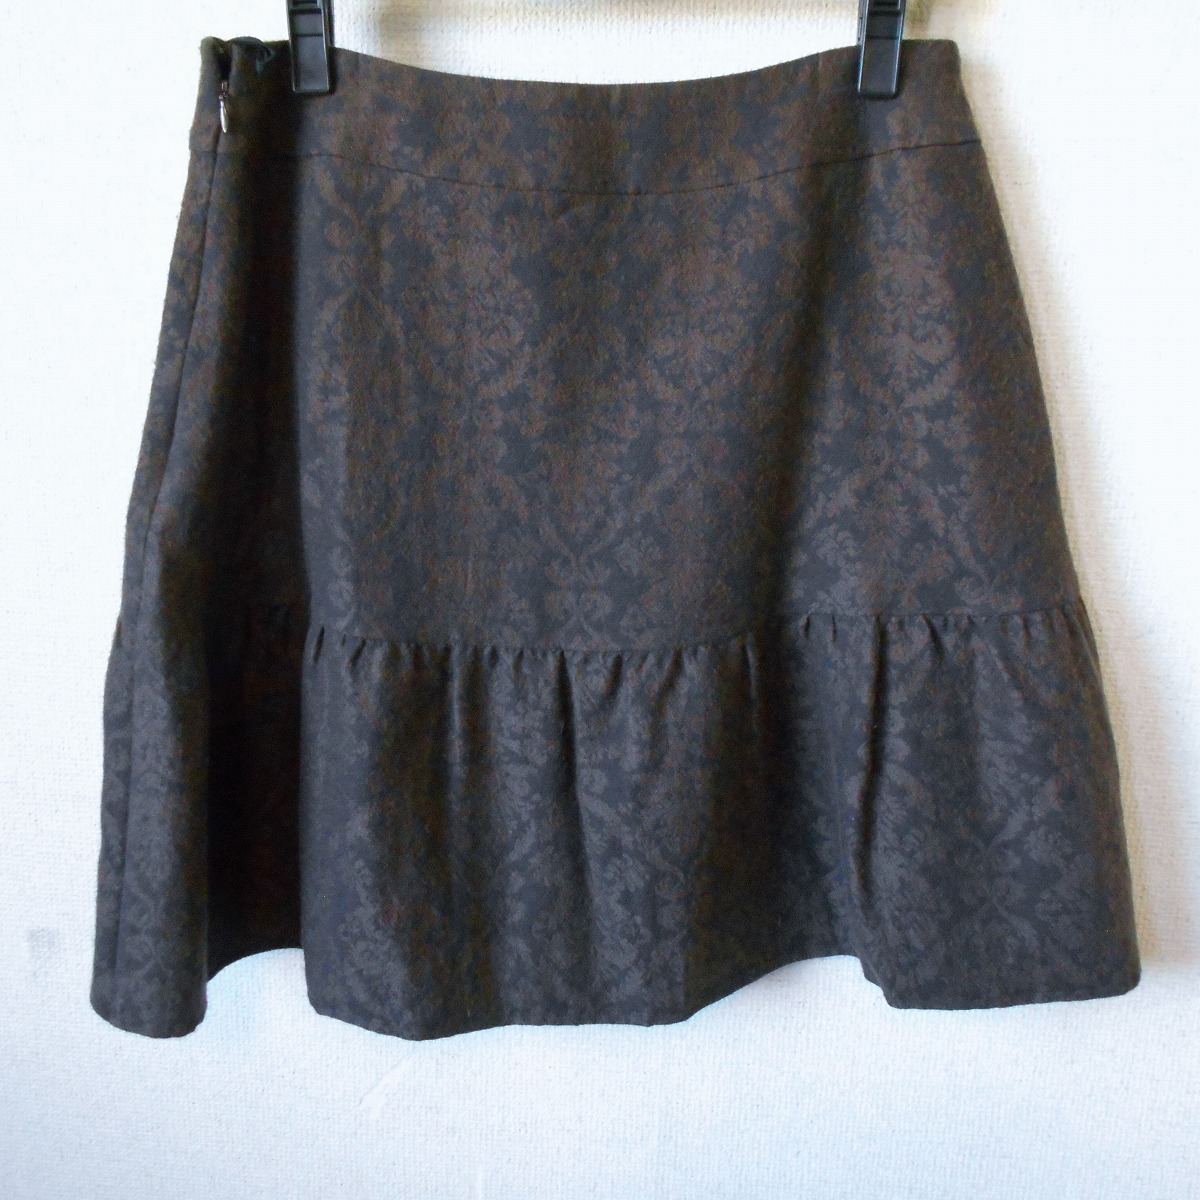  ef-de ef-de большой размер 15 осень-зима направление юбка сделано в Японии 